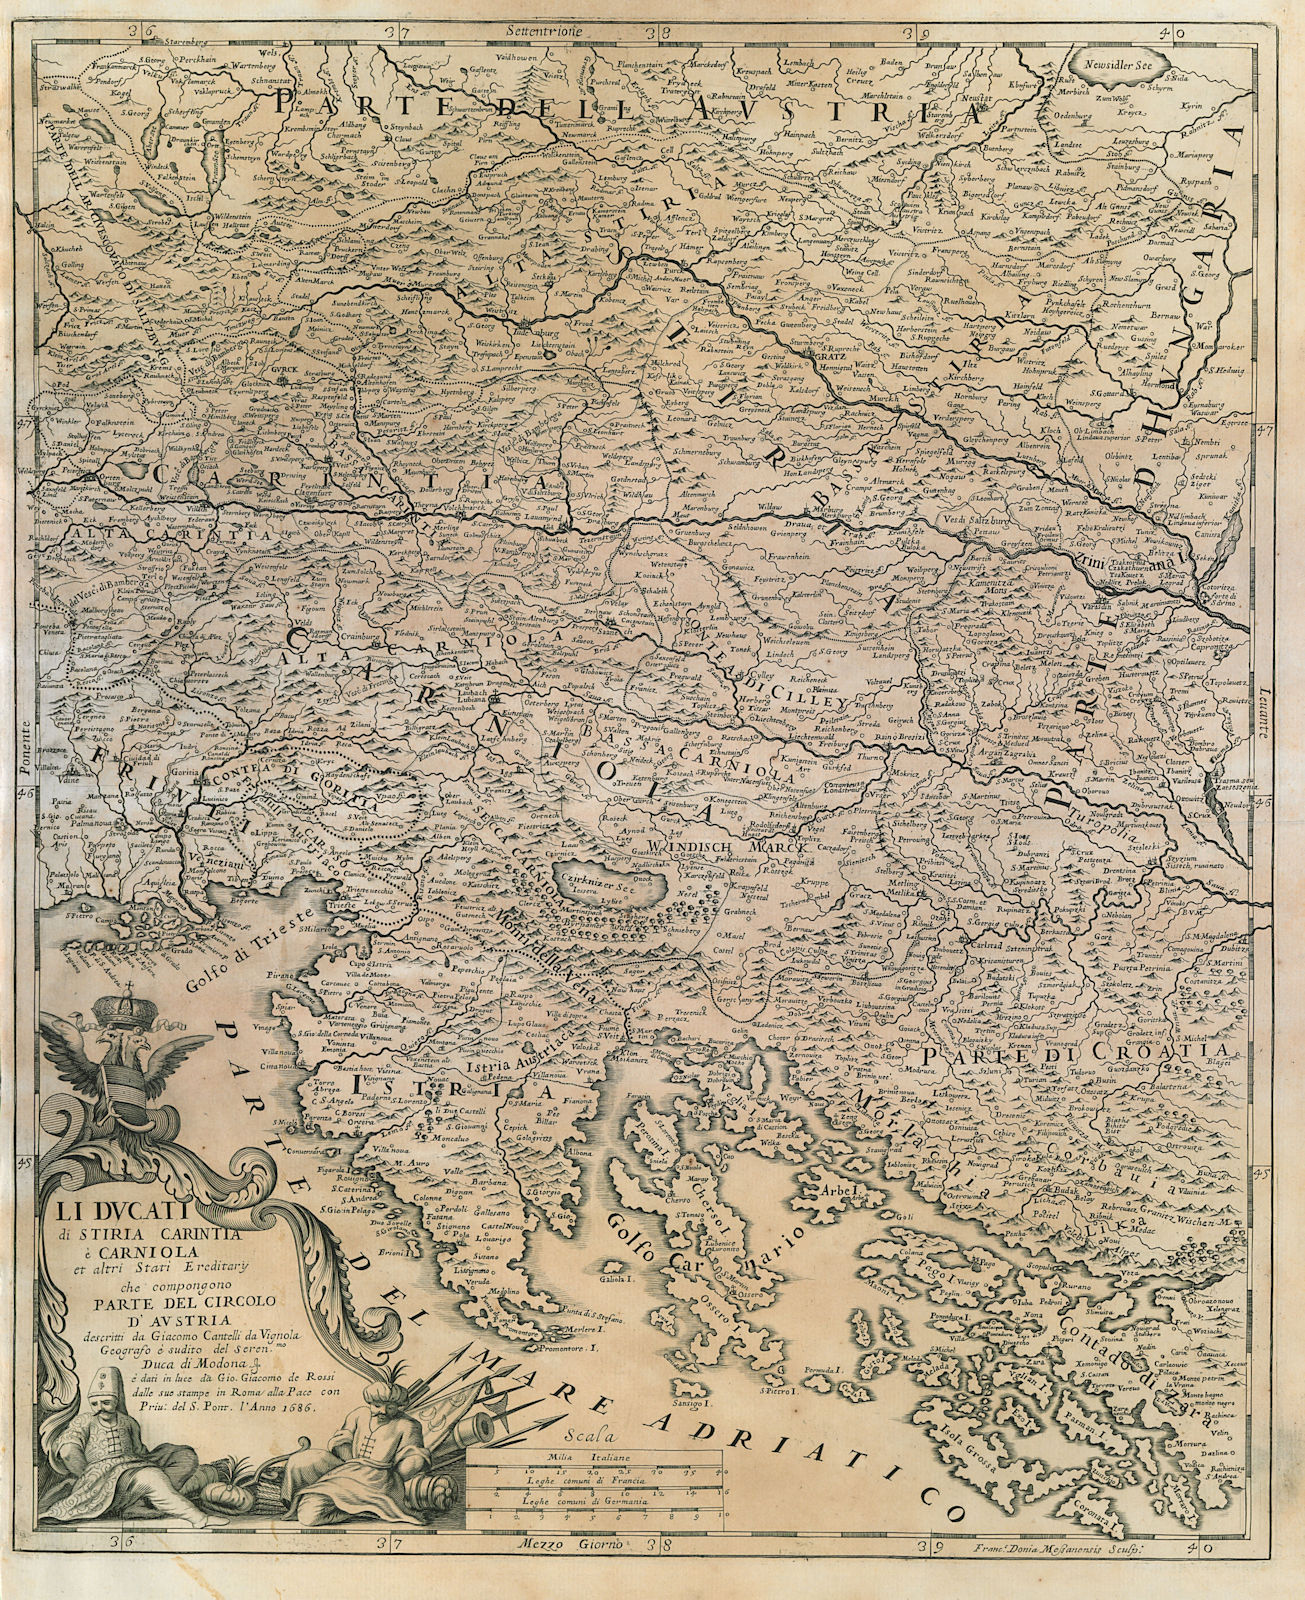 Li Ducati di Stiria, Carintia e Carniola. Istria Slovenia Austria ROSSI 1686 map